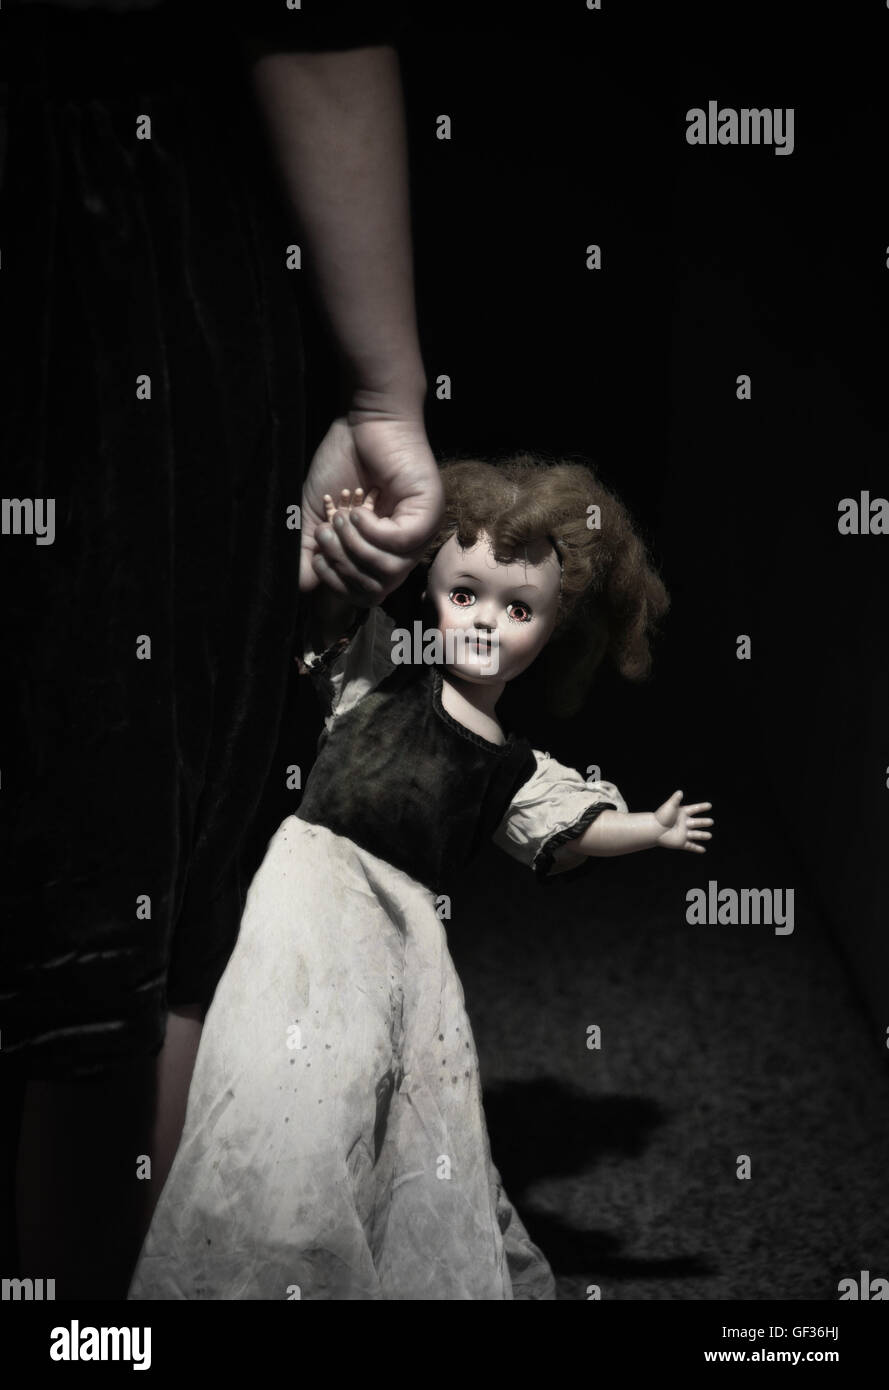 La main de l'enfant tenant une poupée avec des yeux lumineux effrayant. Banque D'Images